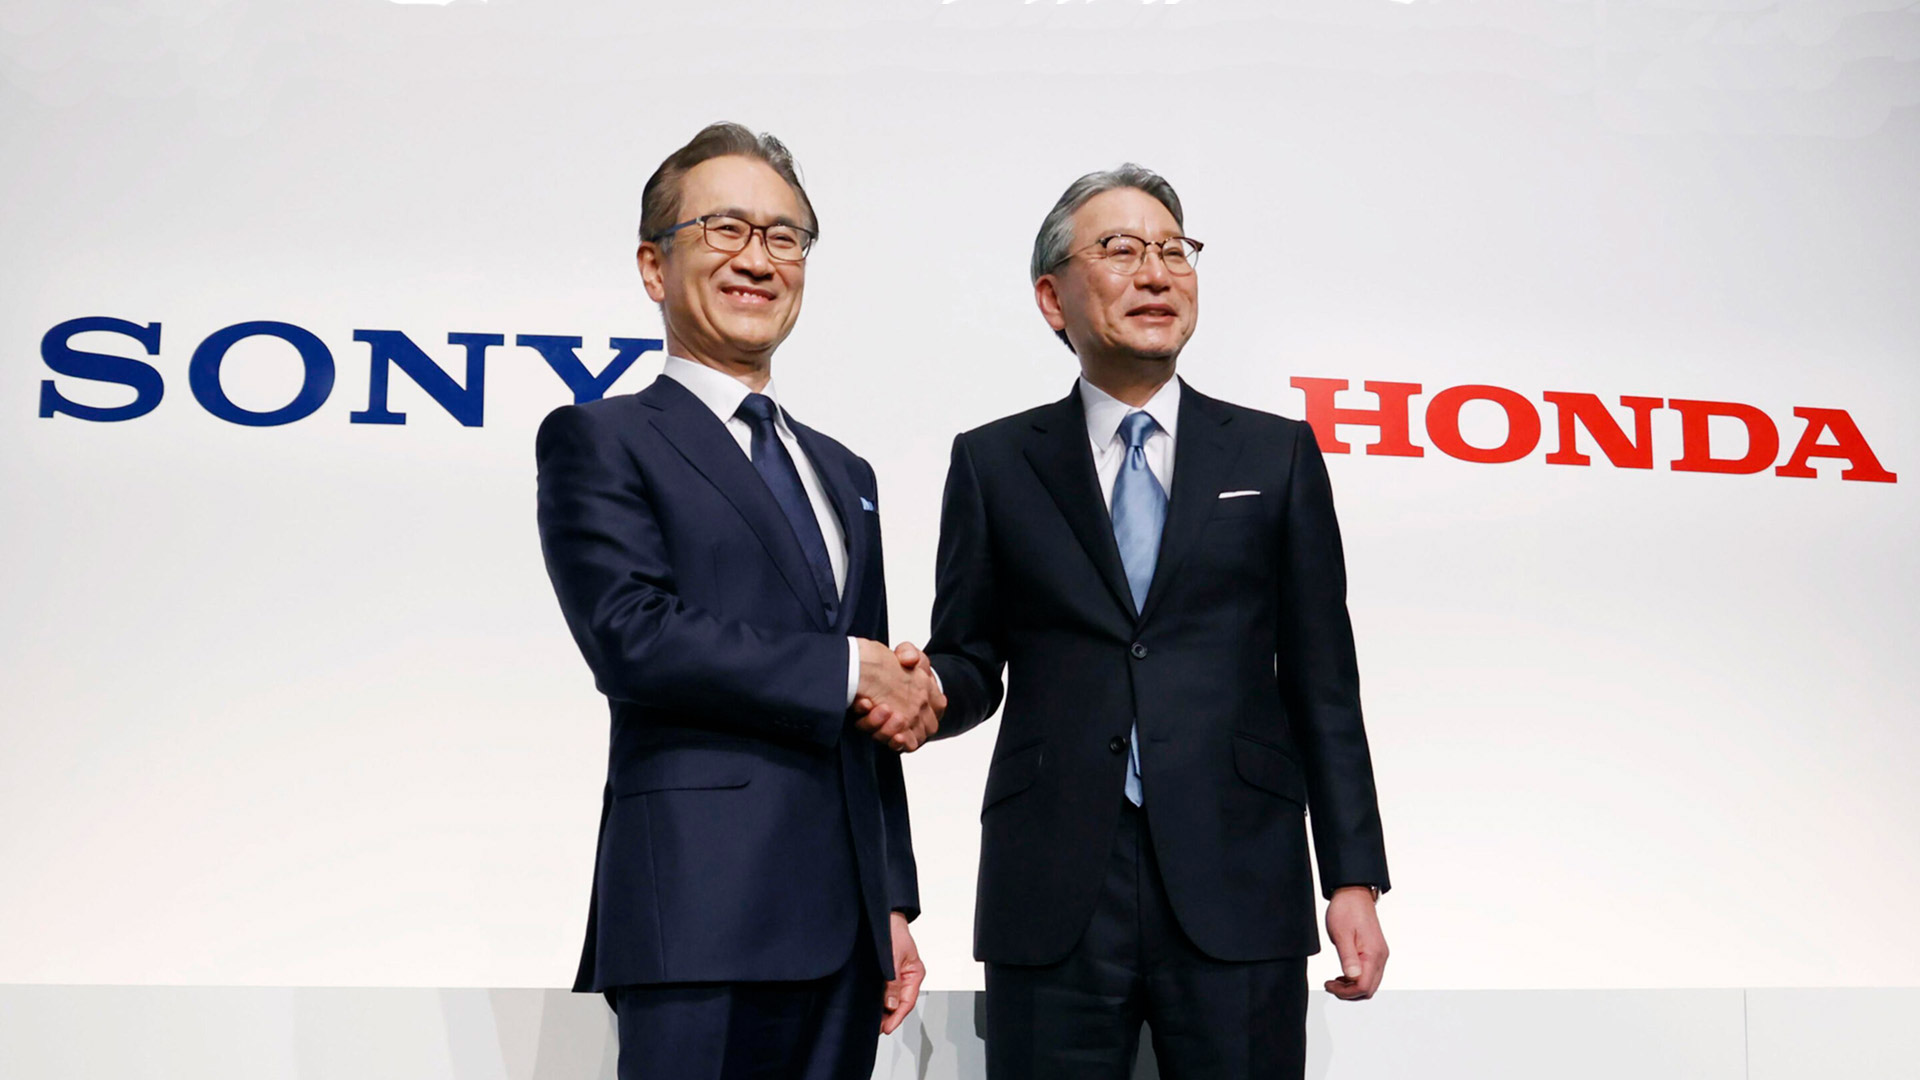 Honda y Sony han decidido asociarse en junio pasado, y hoy ya anuncian la fecha de llegada de su primer auto conjunto